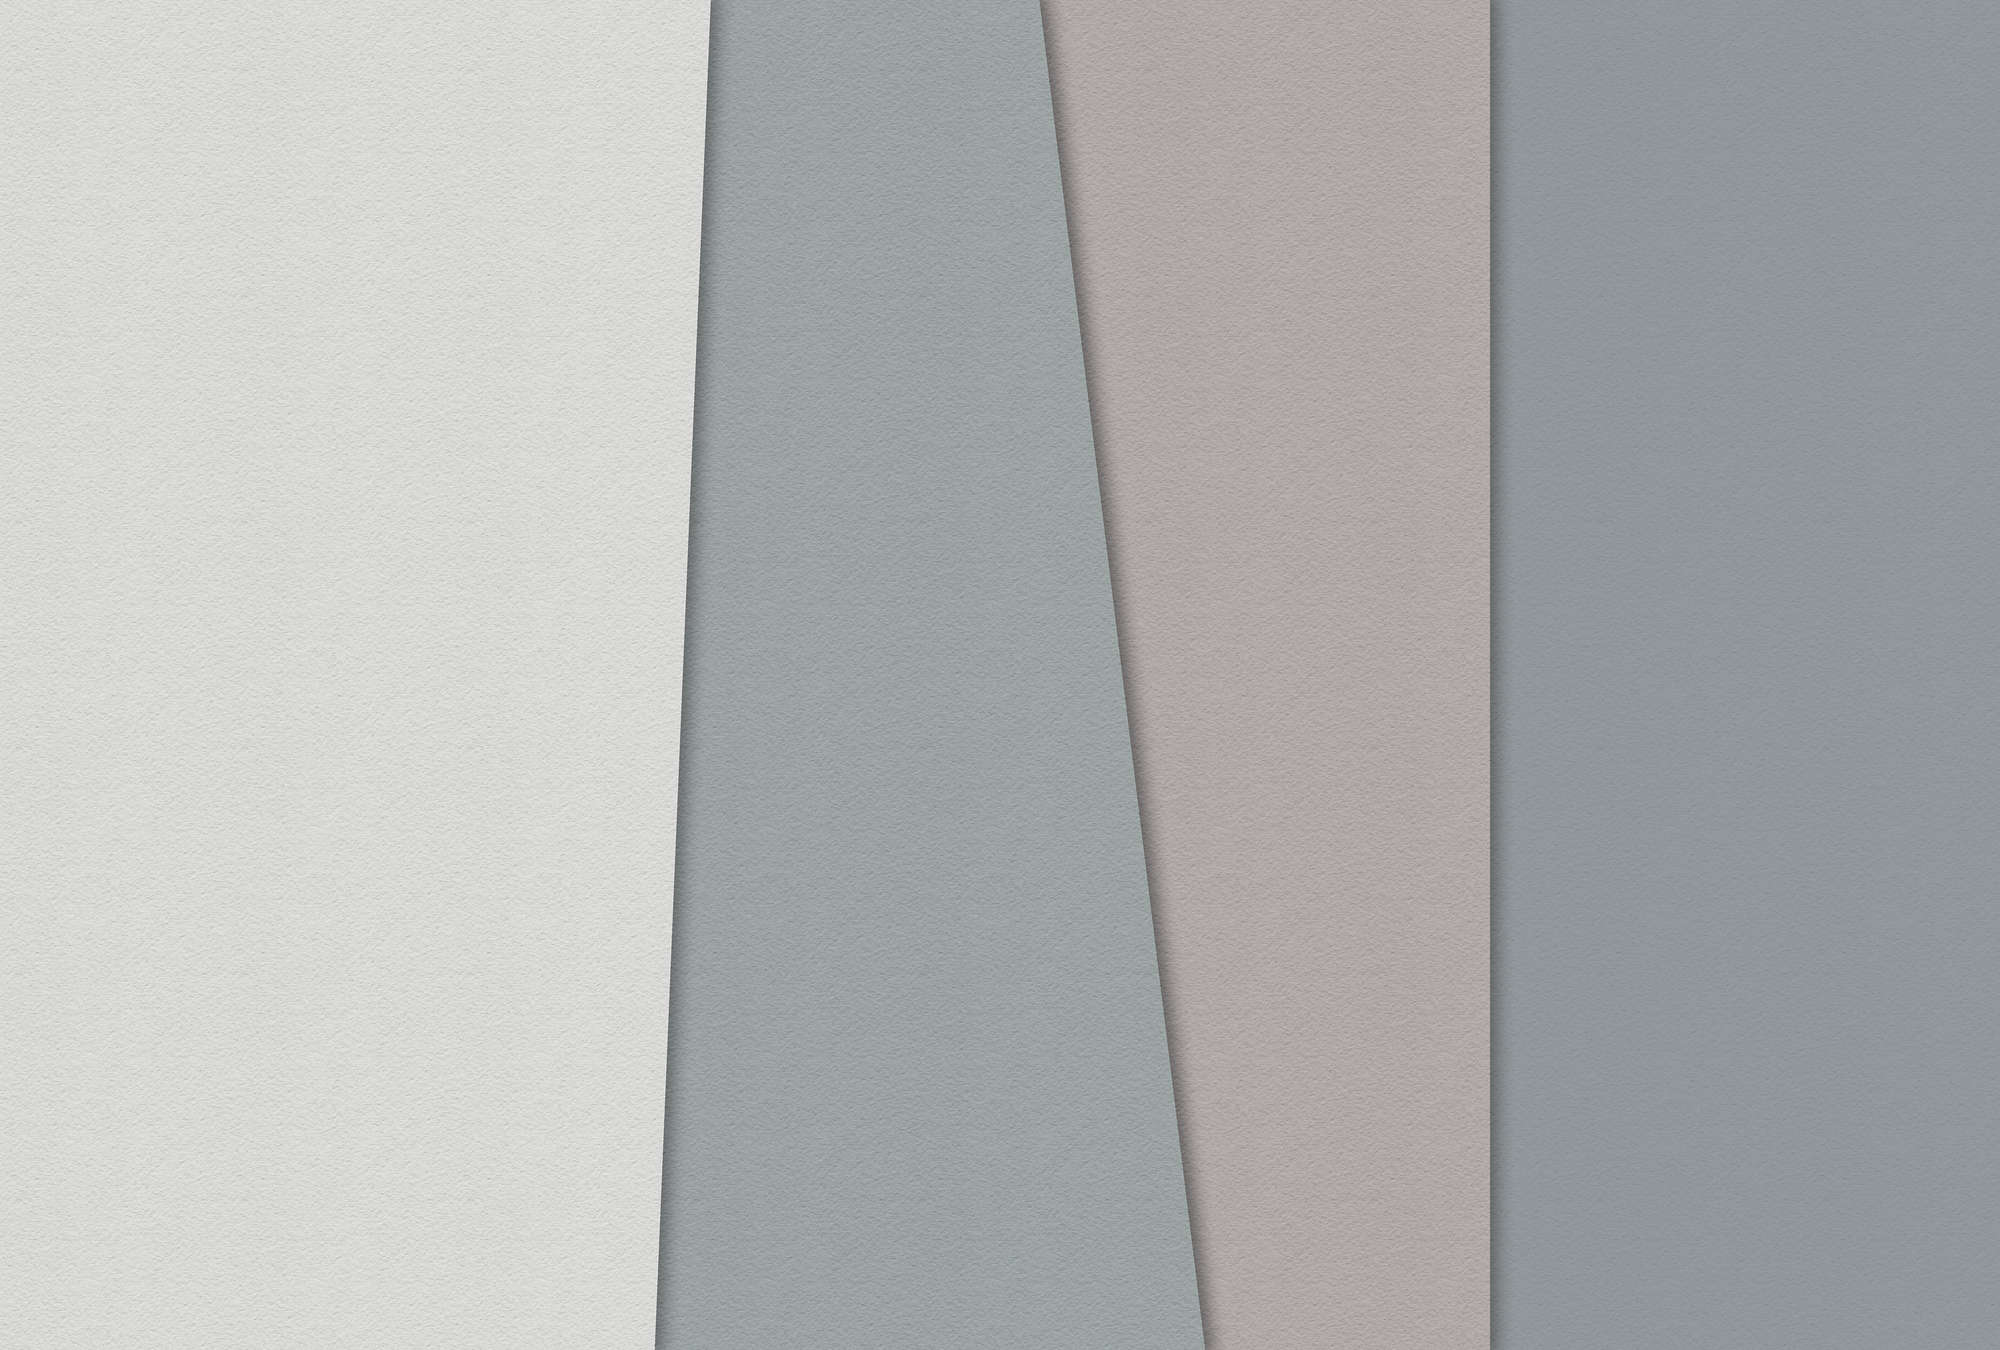             Layered paper 1 - Grafische Fototapete mit Farbflächen in Büttenpapier Struktur – Blau, Creme | Struktur Vlies
        